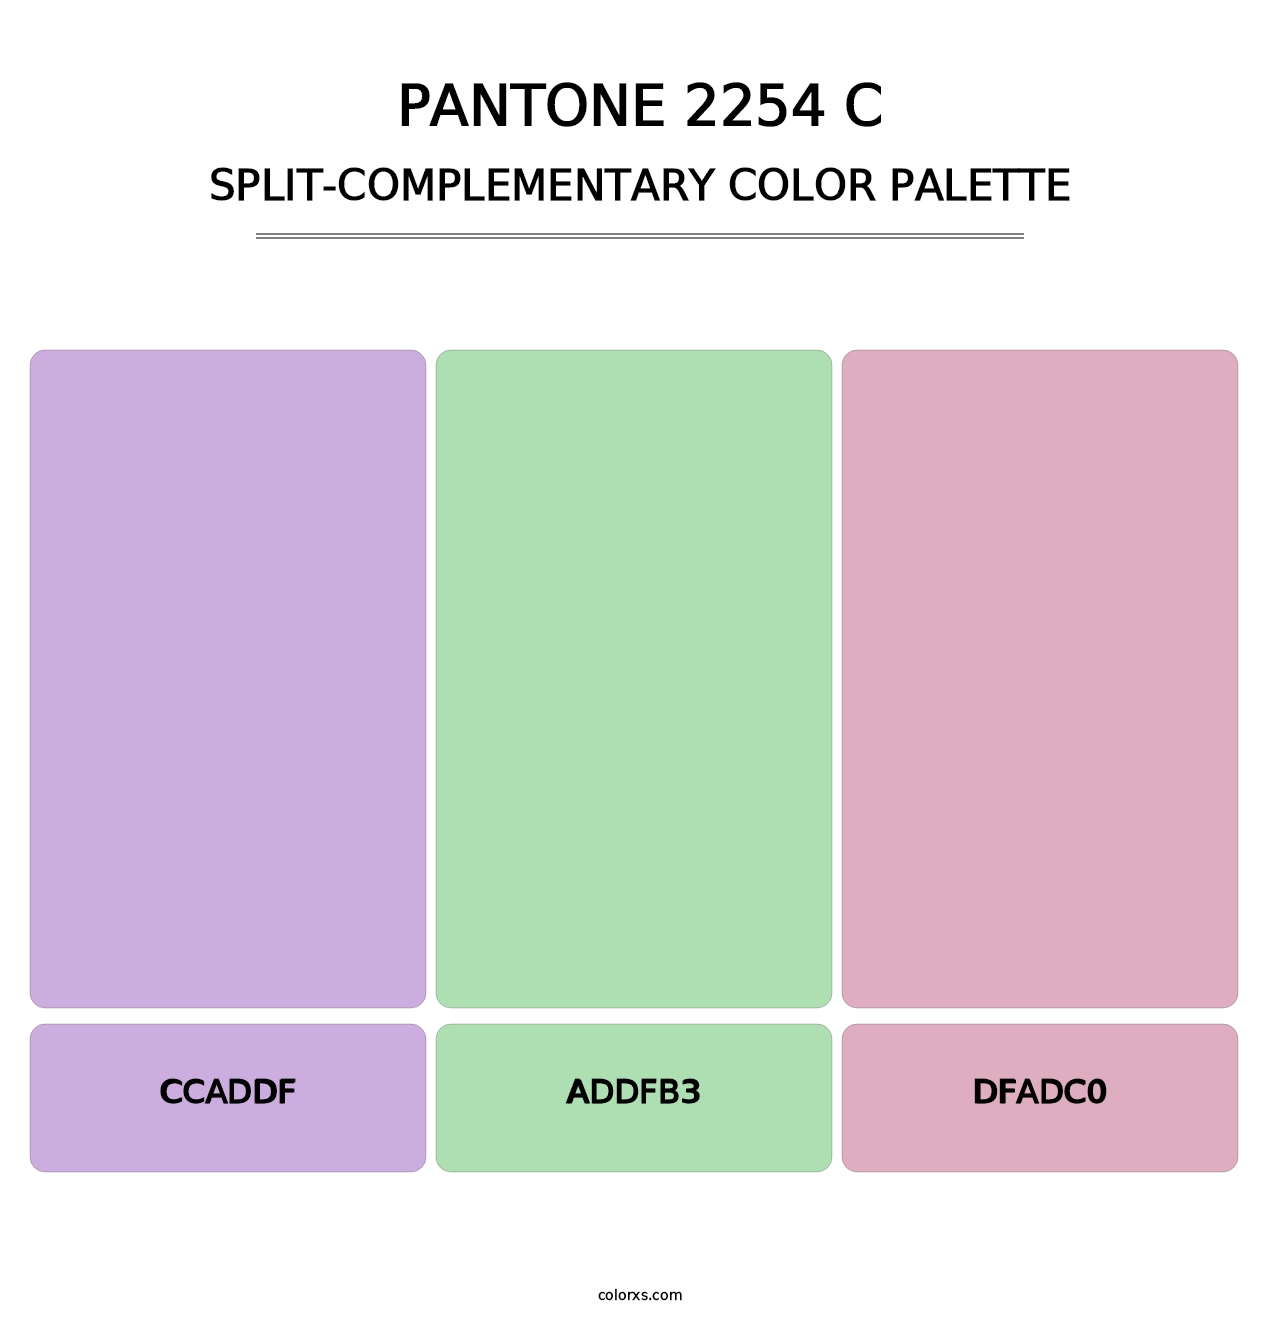 PANTONE 2254 C - Split-Complementary Color Palette